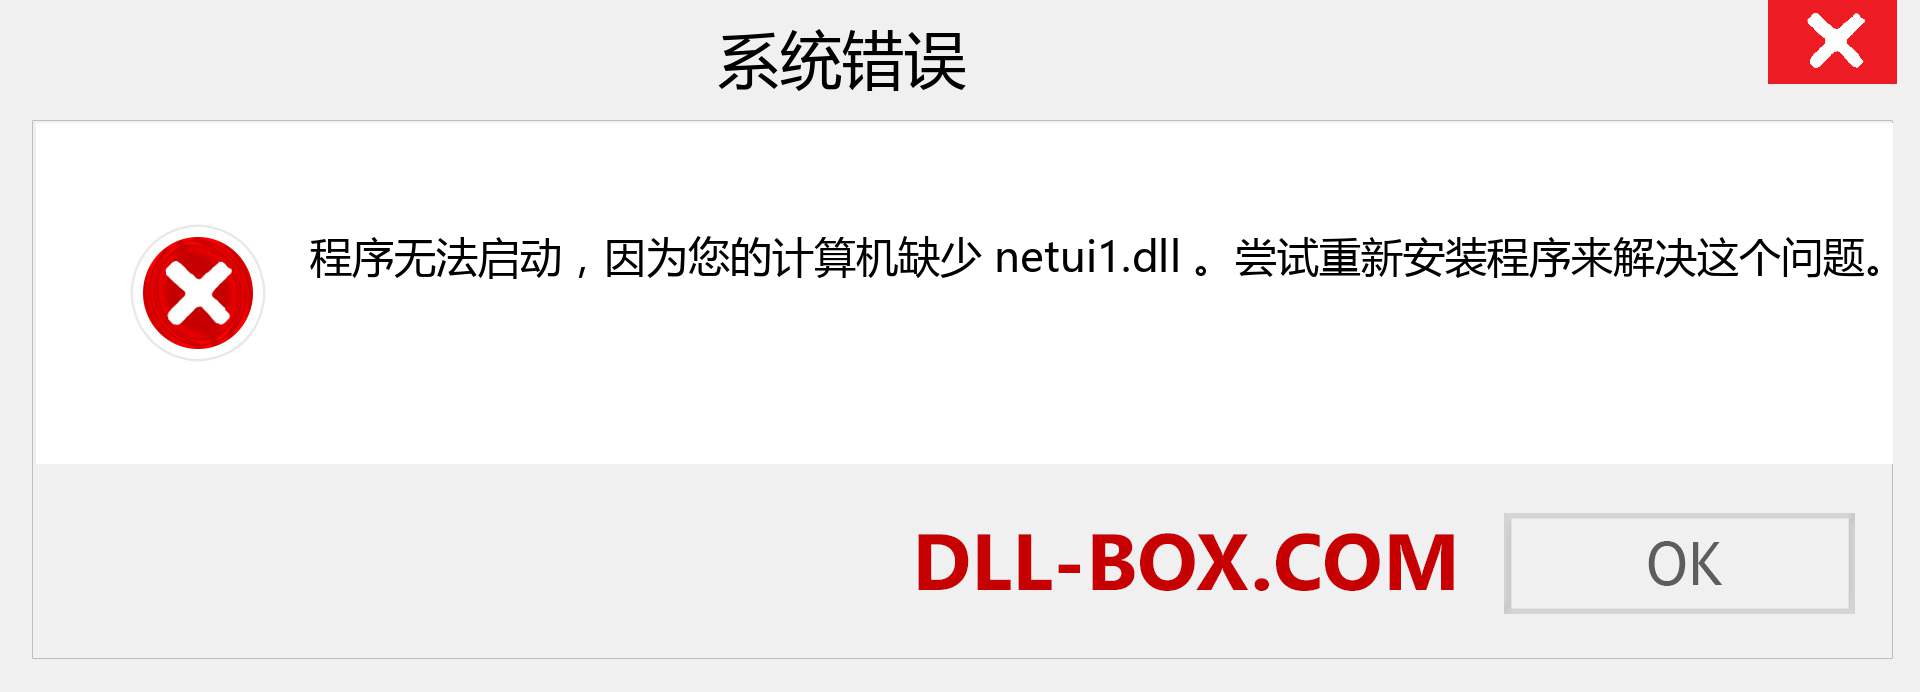 netui1.dll 文件丢失？。 适用于 Windows 7、8、10 的下载 - 修复 Windows、照片、图像上的 netui1 dll 丢失错误